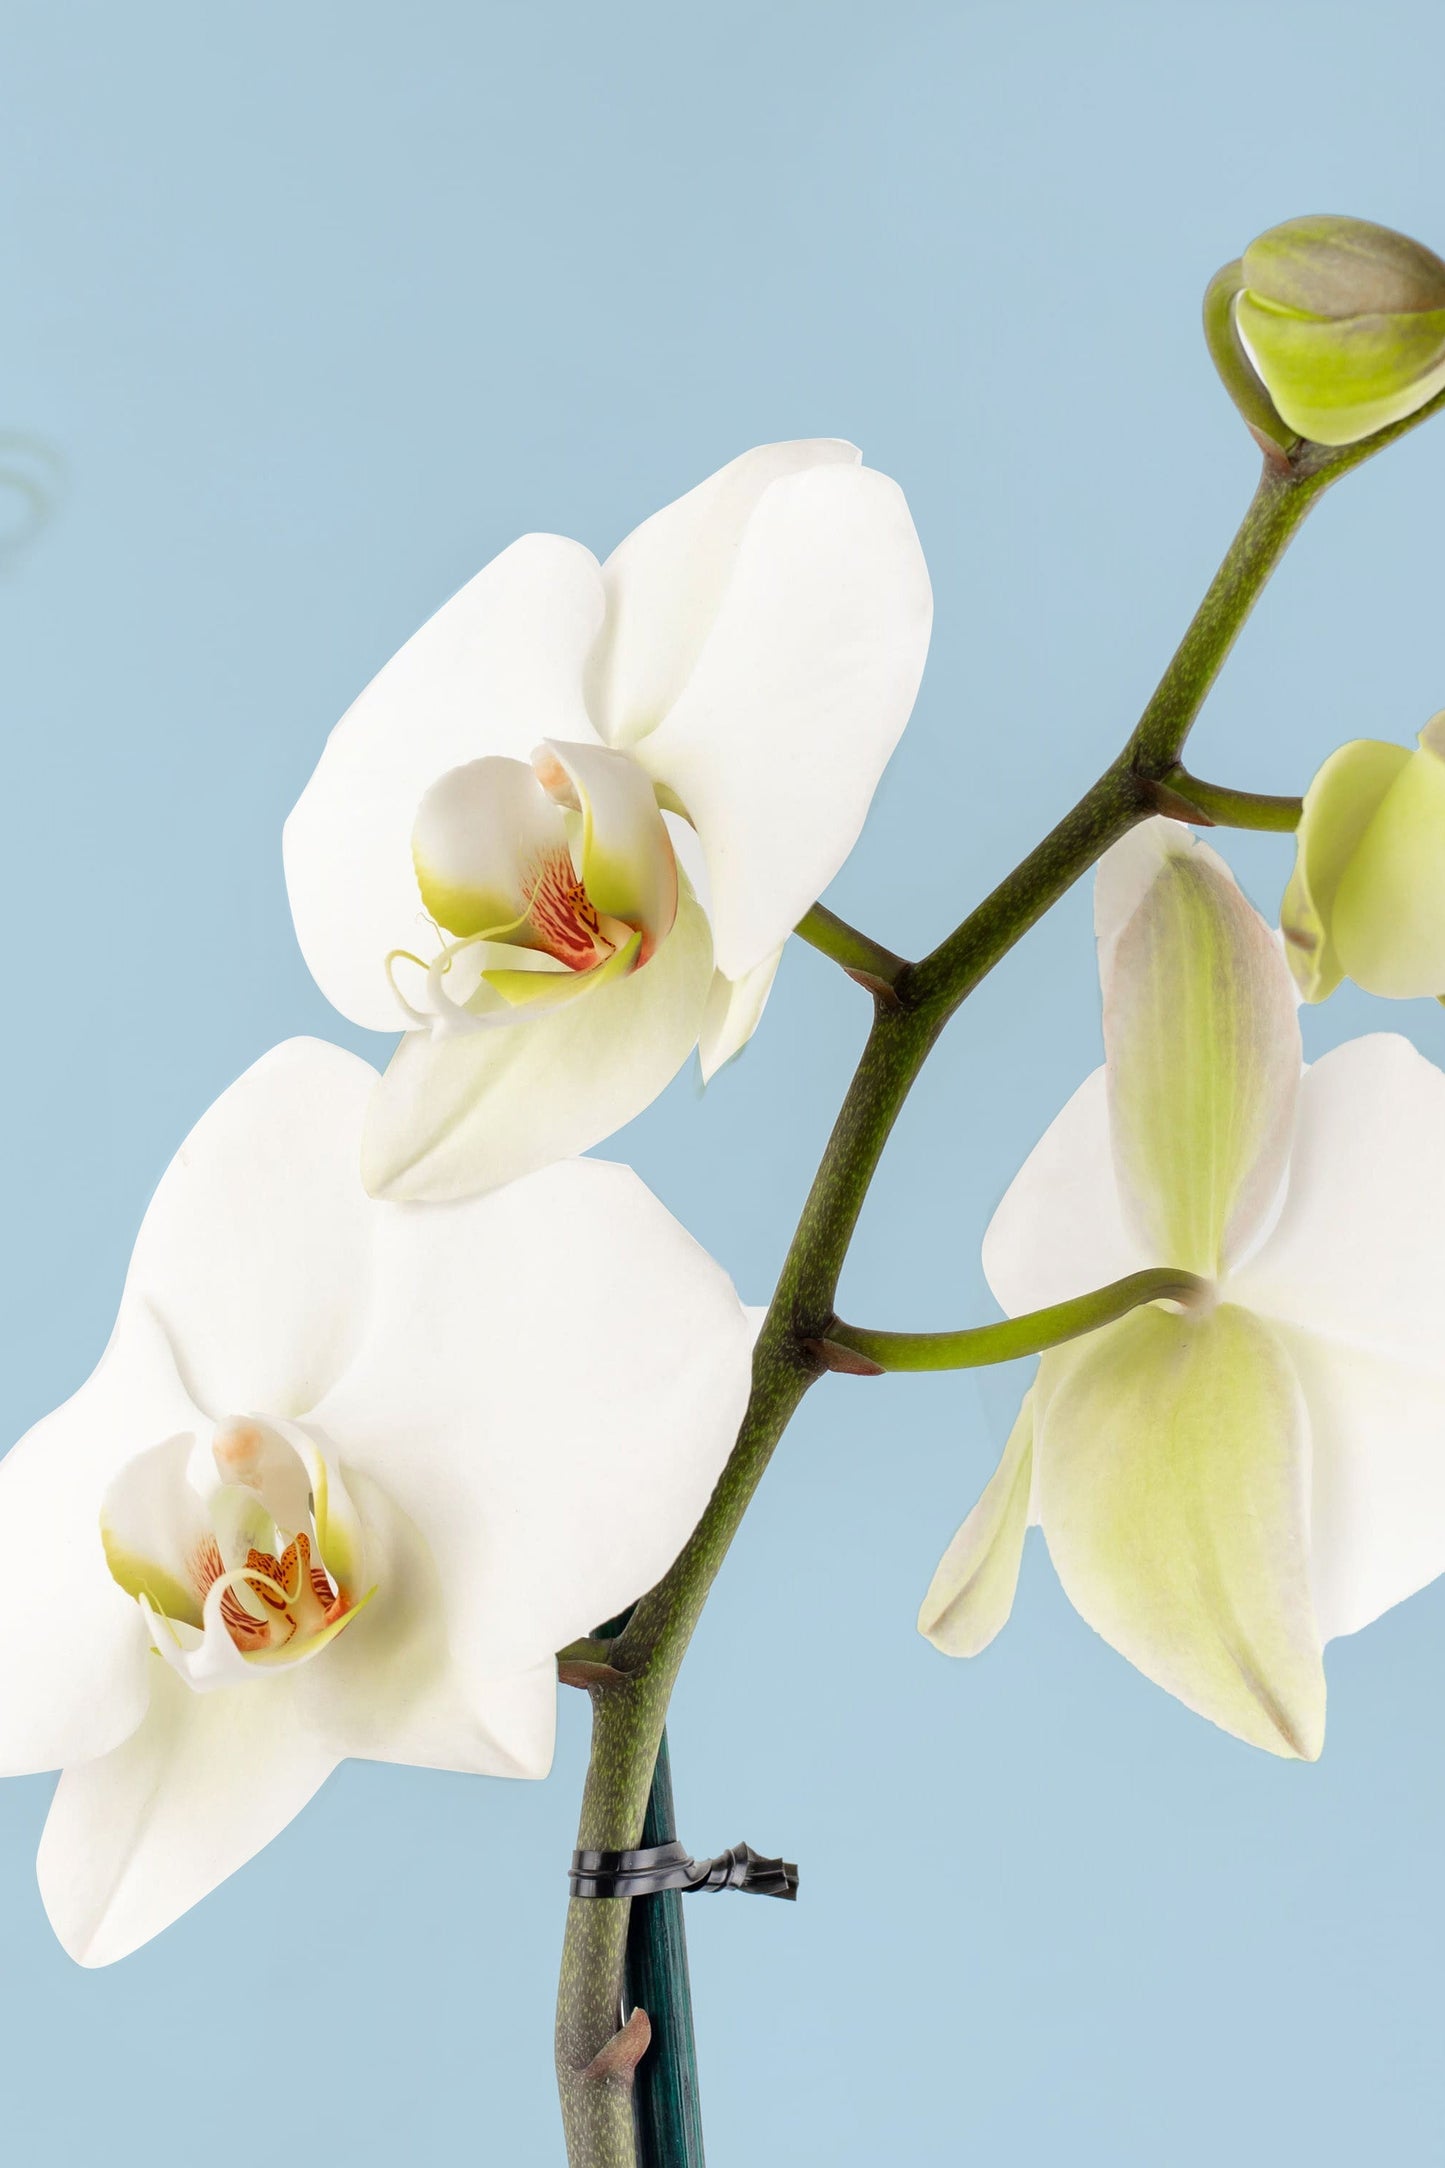 Remedios Varo Blanco Planta // Orquídea Blanca